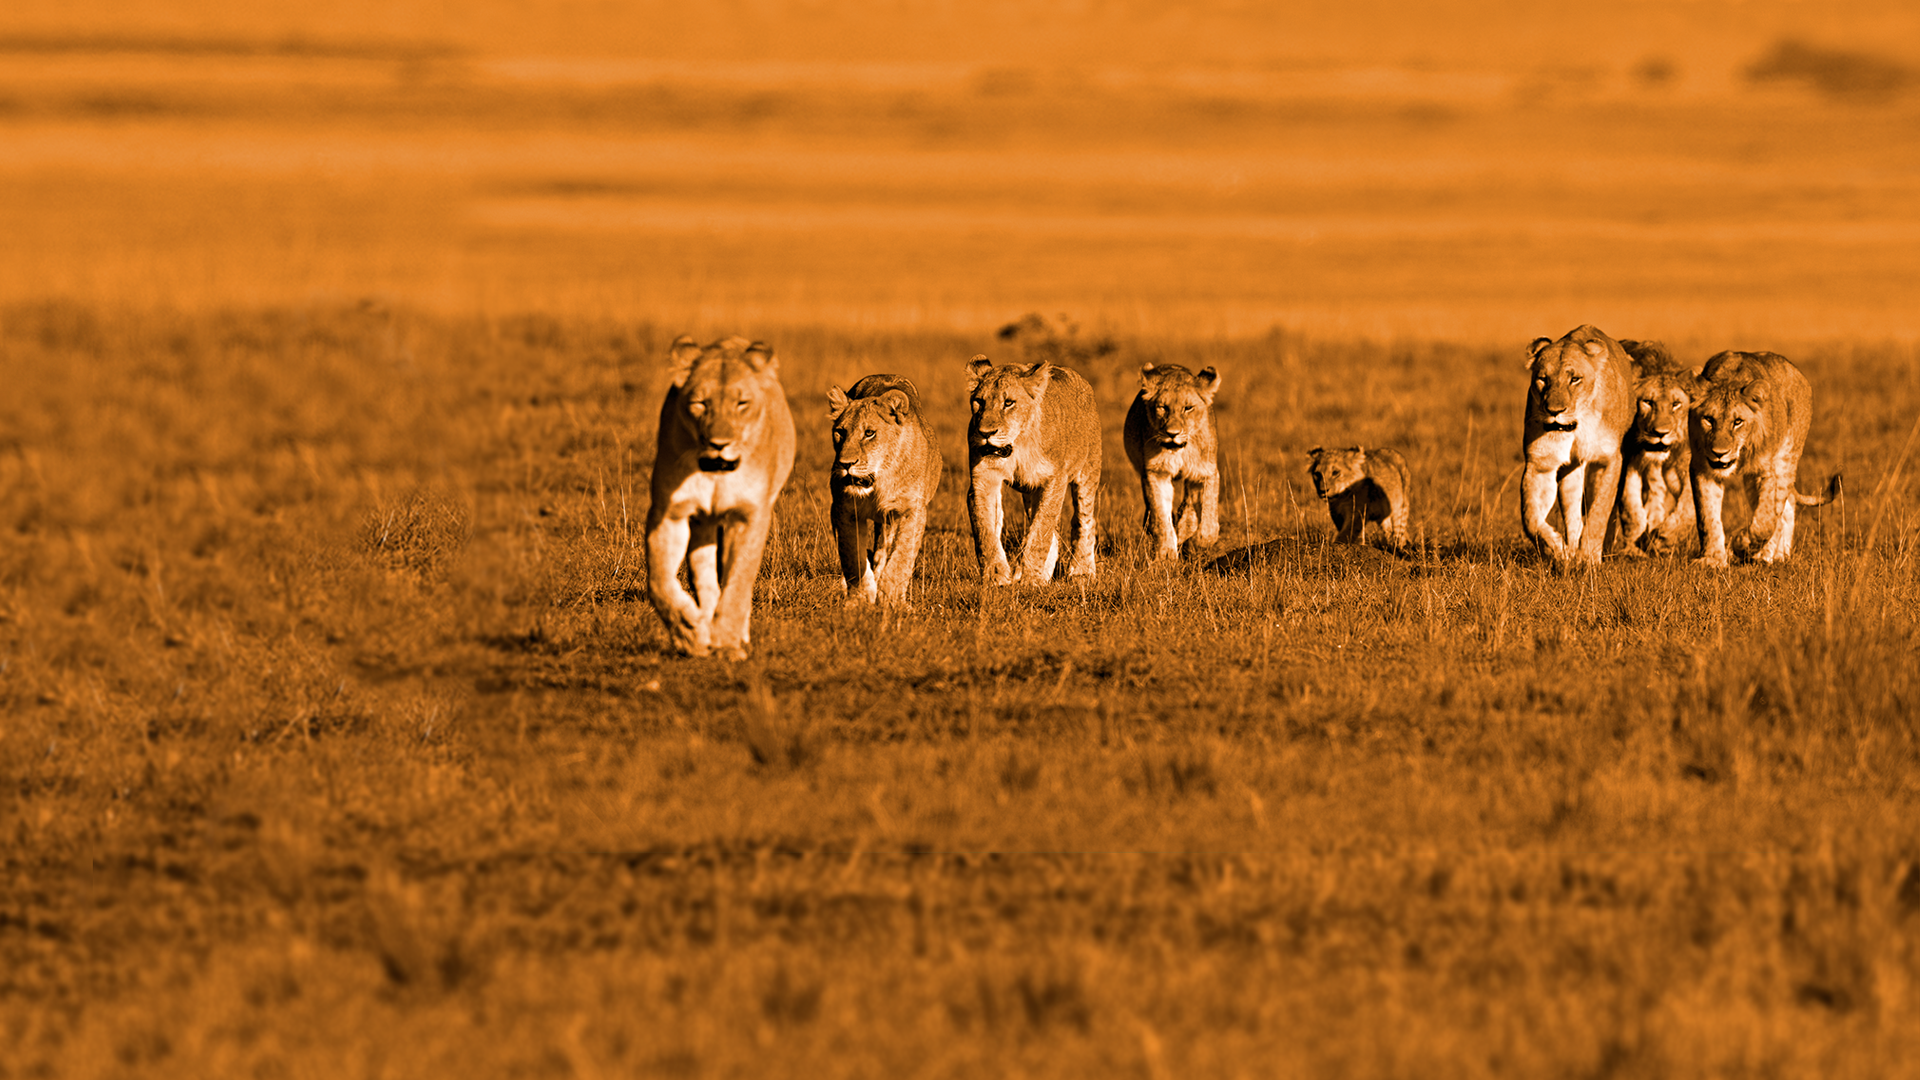 Afrikai macskák - A bátorság birodalma